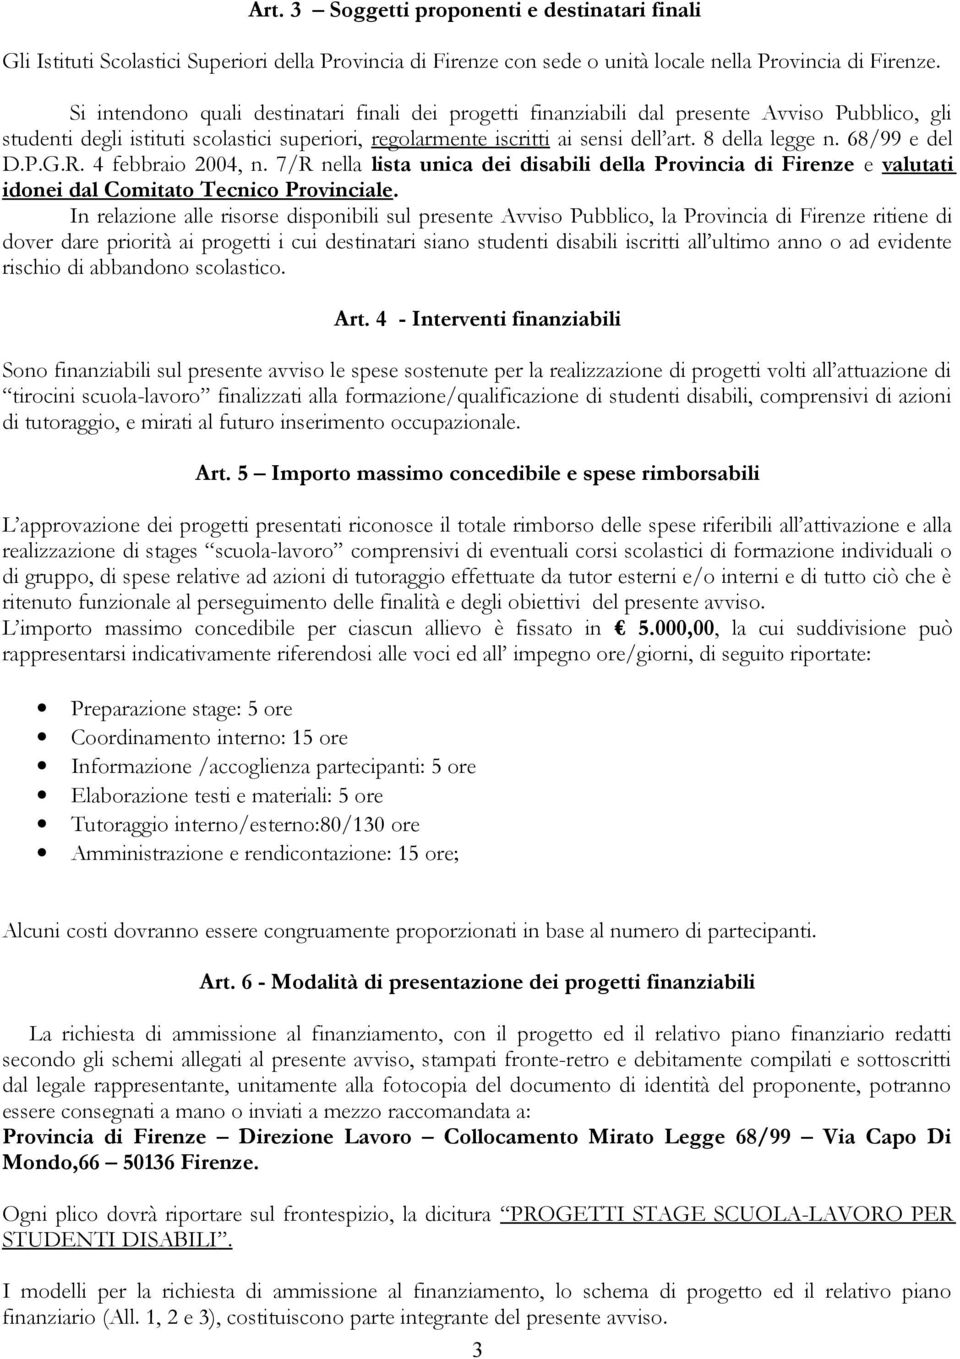 8 della legge n. 68/99 e del D.P.G.R. 4 febbraio 2004, n. 7/R nella lista unica dei disabili della Provincia di Firenze e valutati idonei dal Comitato Tecnico Provinciale.